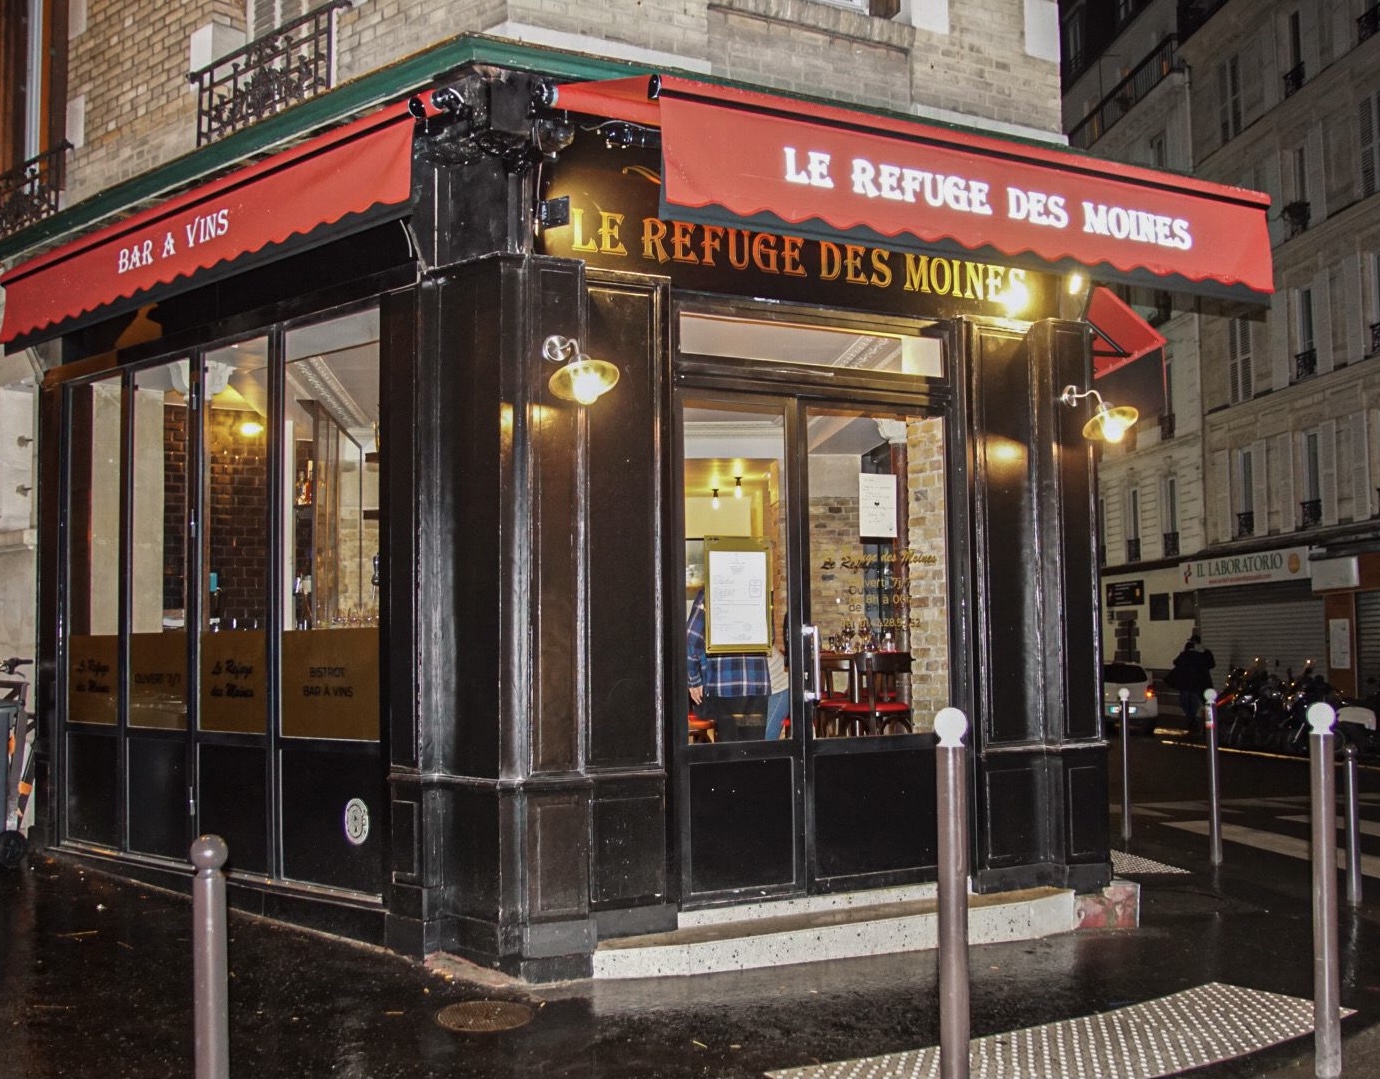 Le Refuge des Moines, Restaurant - Bistrot - Bar à vins Paris 17